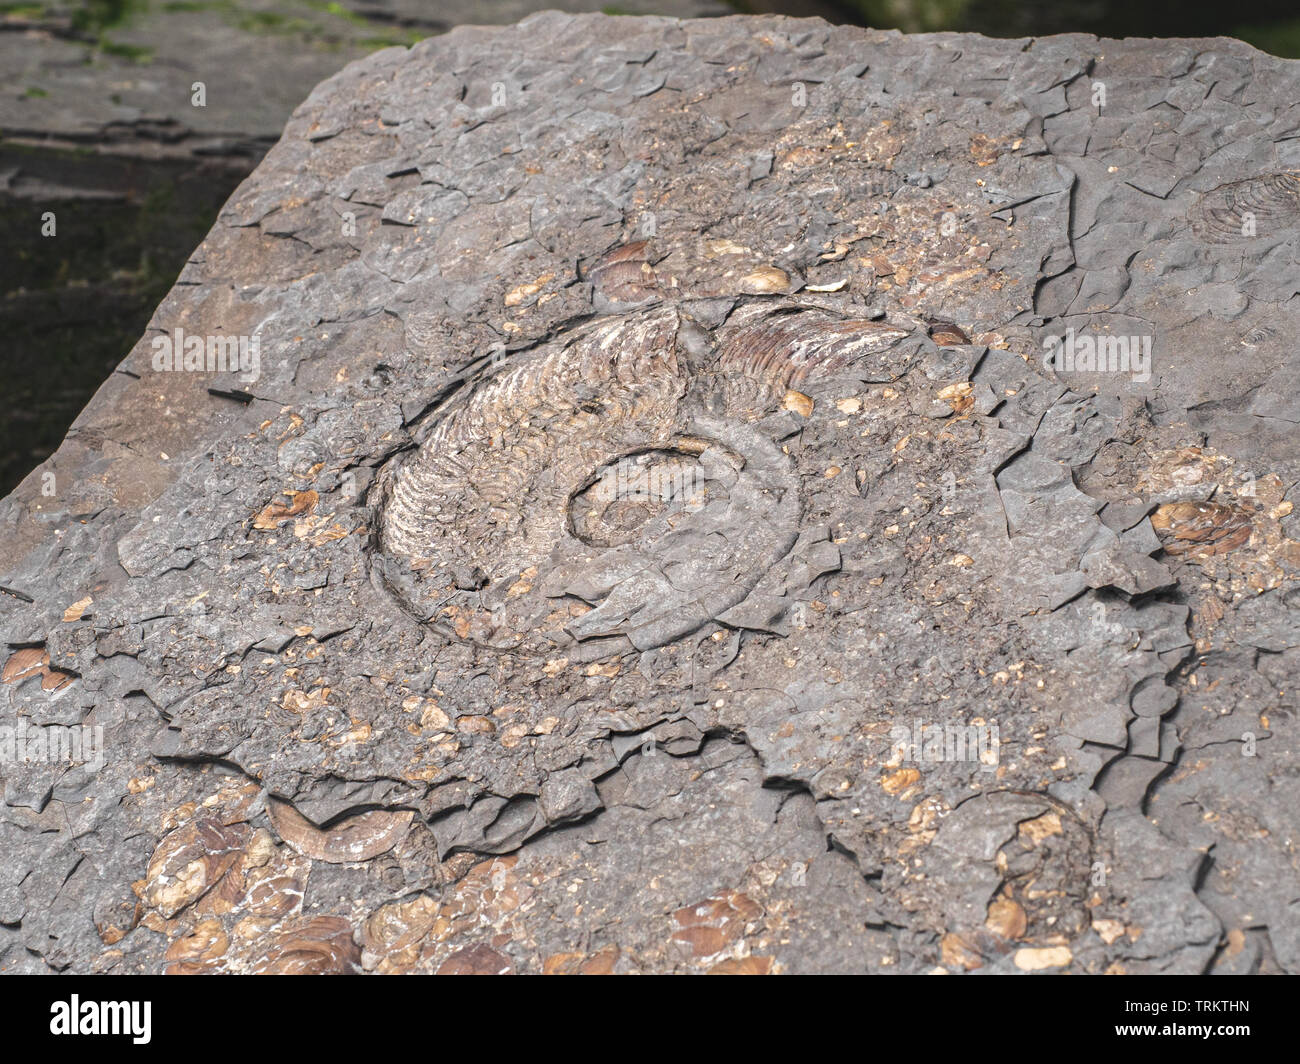 Ammonite fossilisée sur la plage de Sandsend dans le North Yorkshire la plage rocheuse est populaire auprès des chasseurs de fossiles, des touristes et des vacanciers Banque D'Images